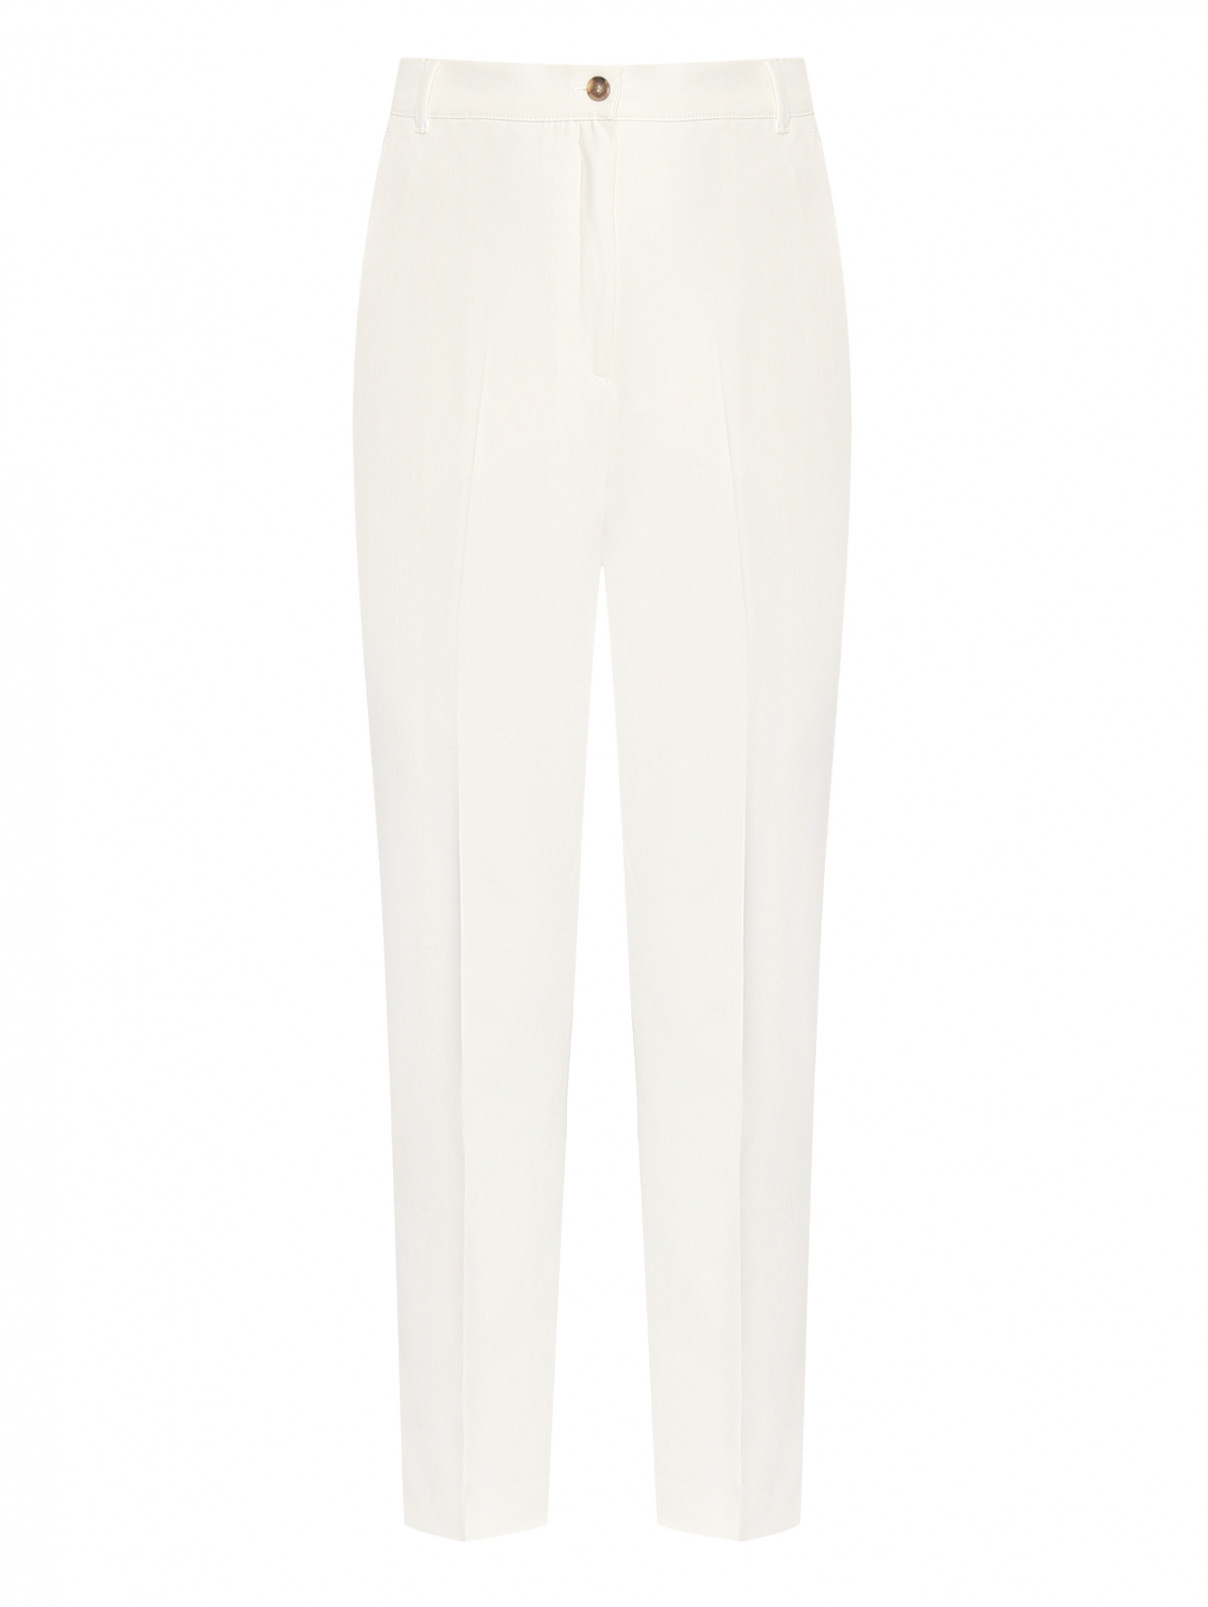 Зауженные брюки с карманами Marina Rinaldi  –  Общий вид  – Цвет:  Белый